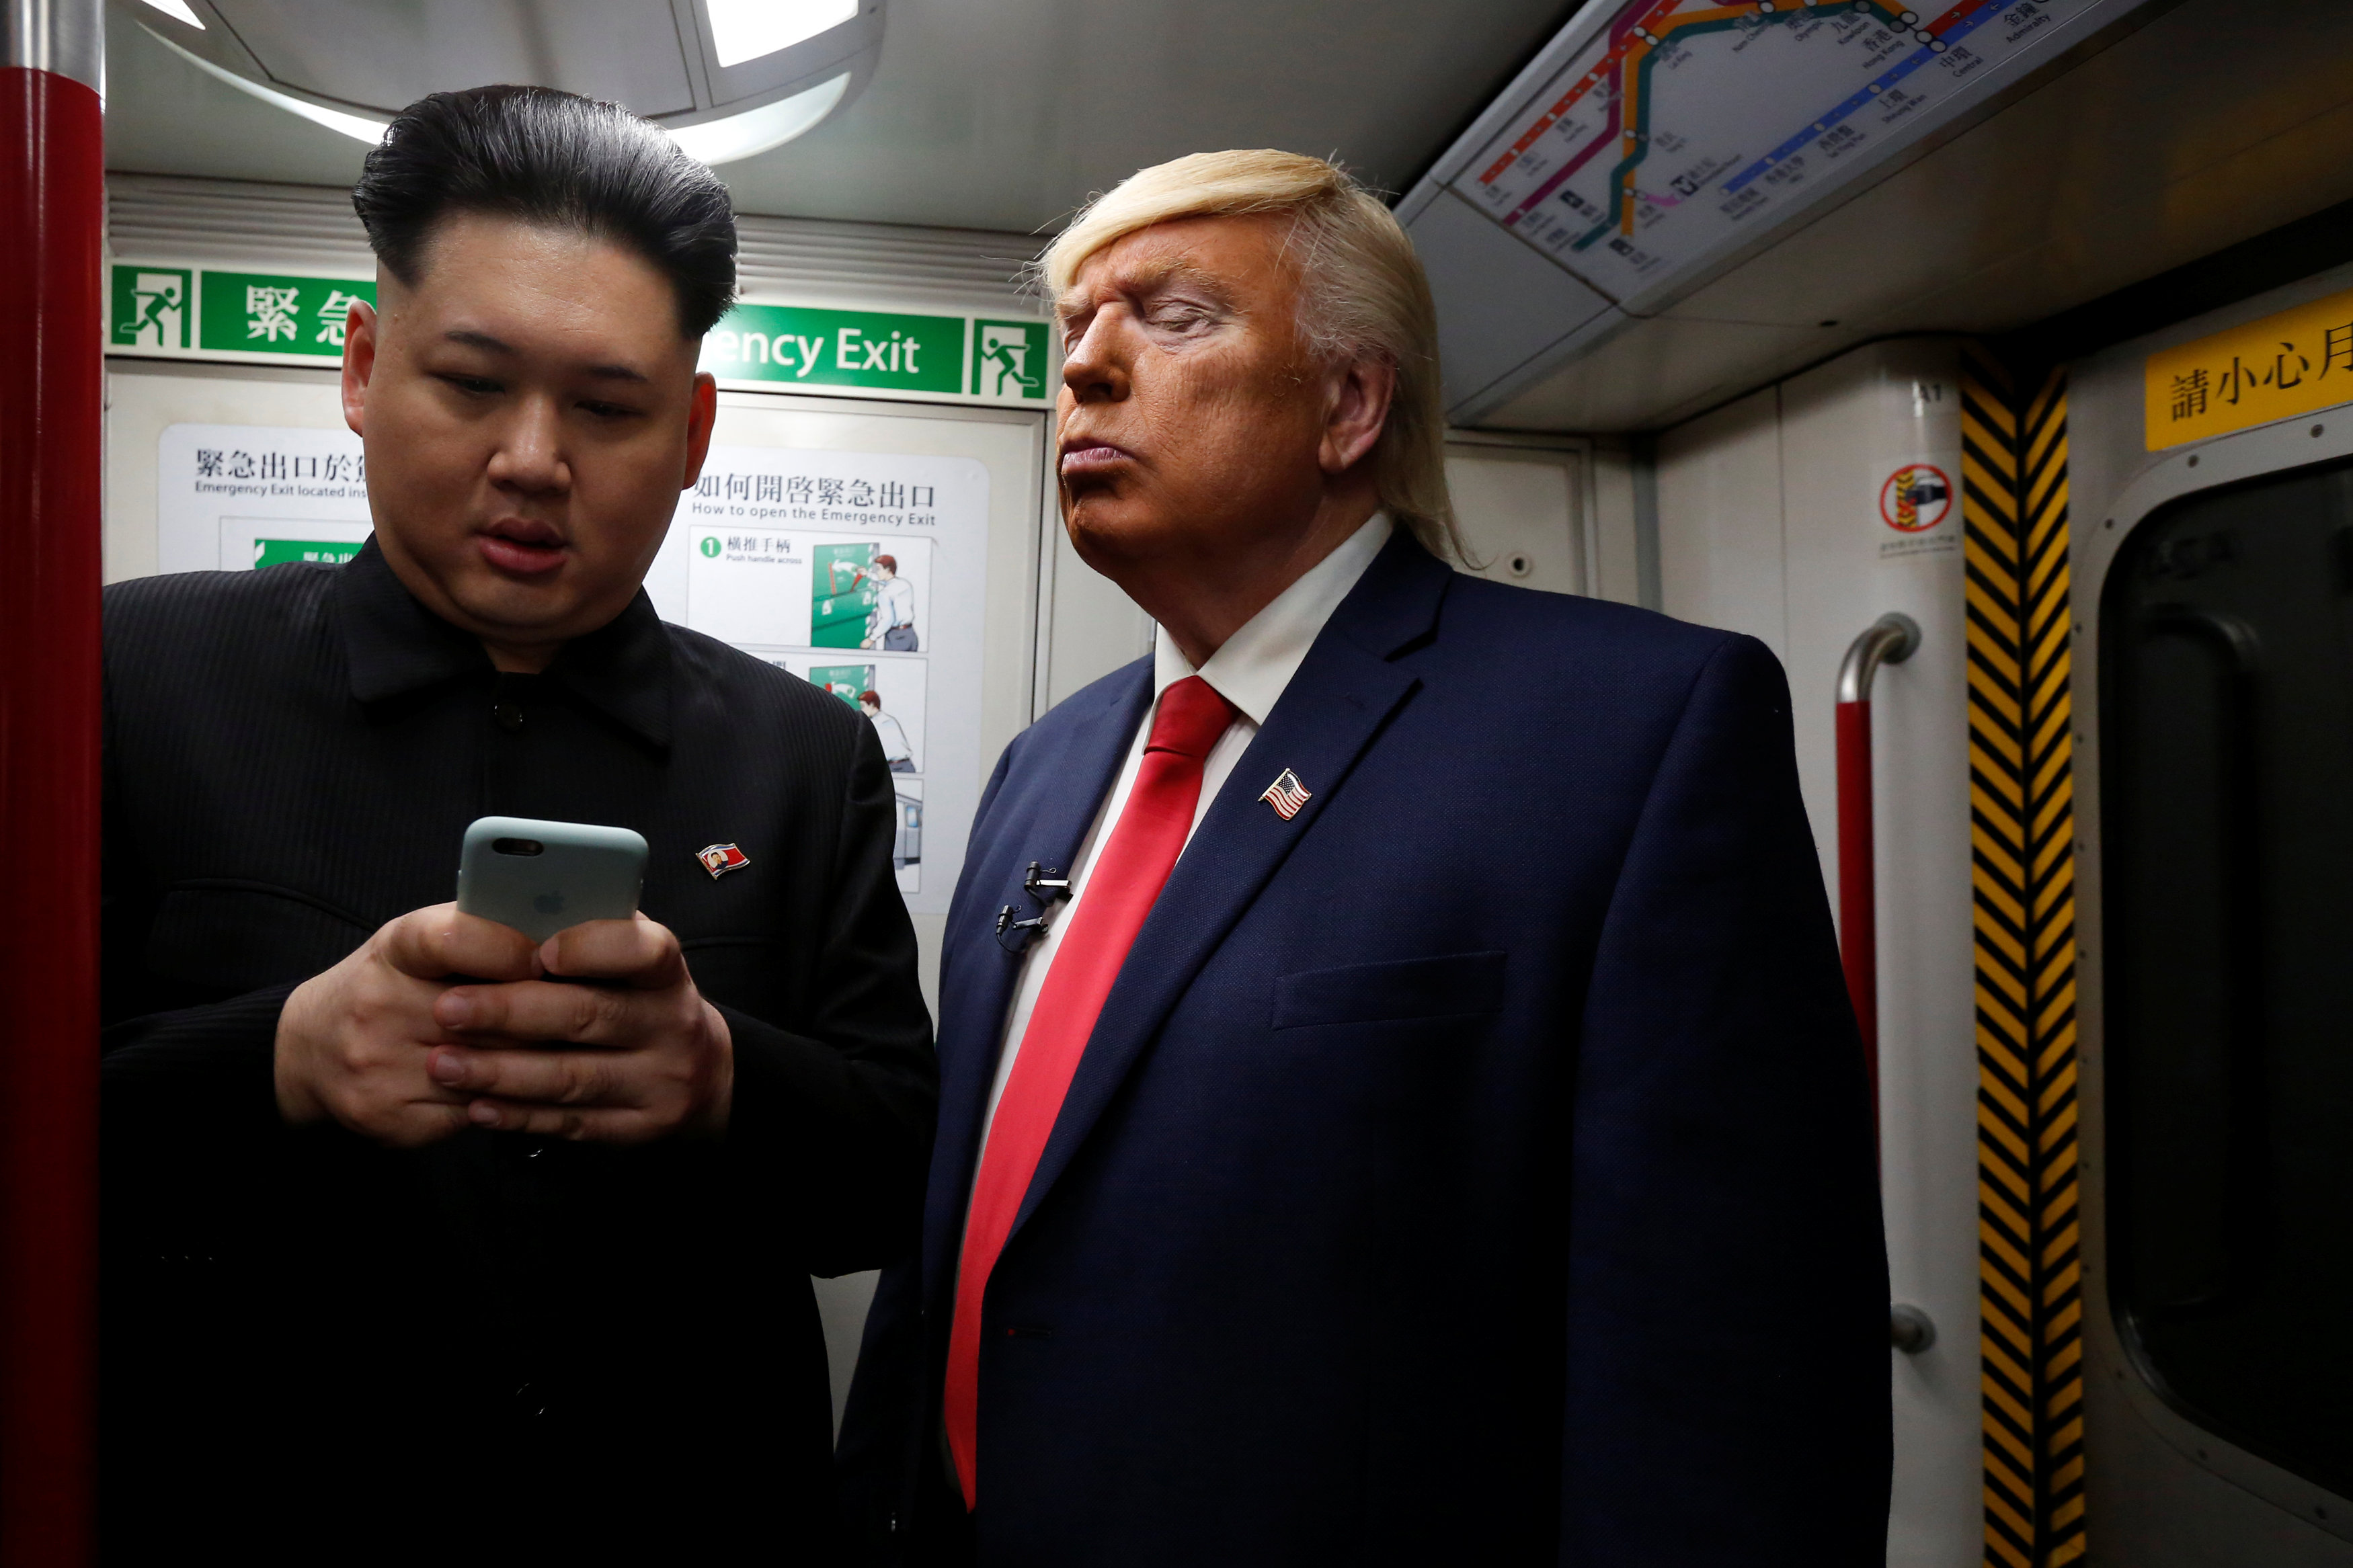 	شبيه دونالد ترامب يسترق النظر لمحادثات شبيه زعيم كوريا الشمالية عبر هاتفه الخاص